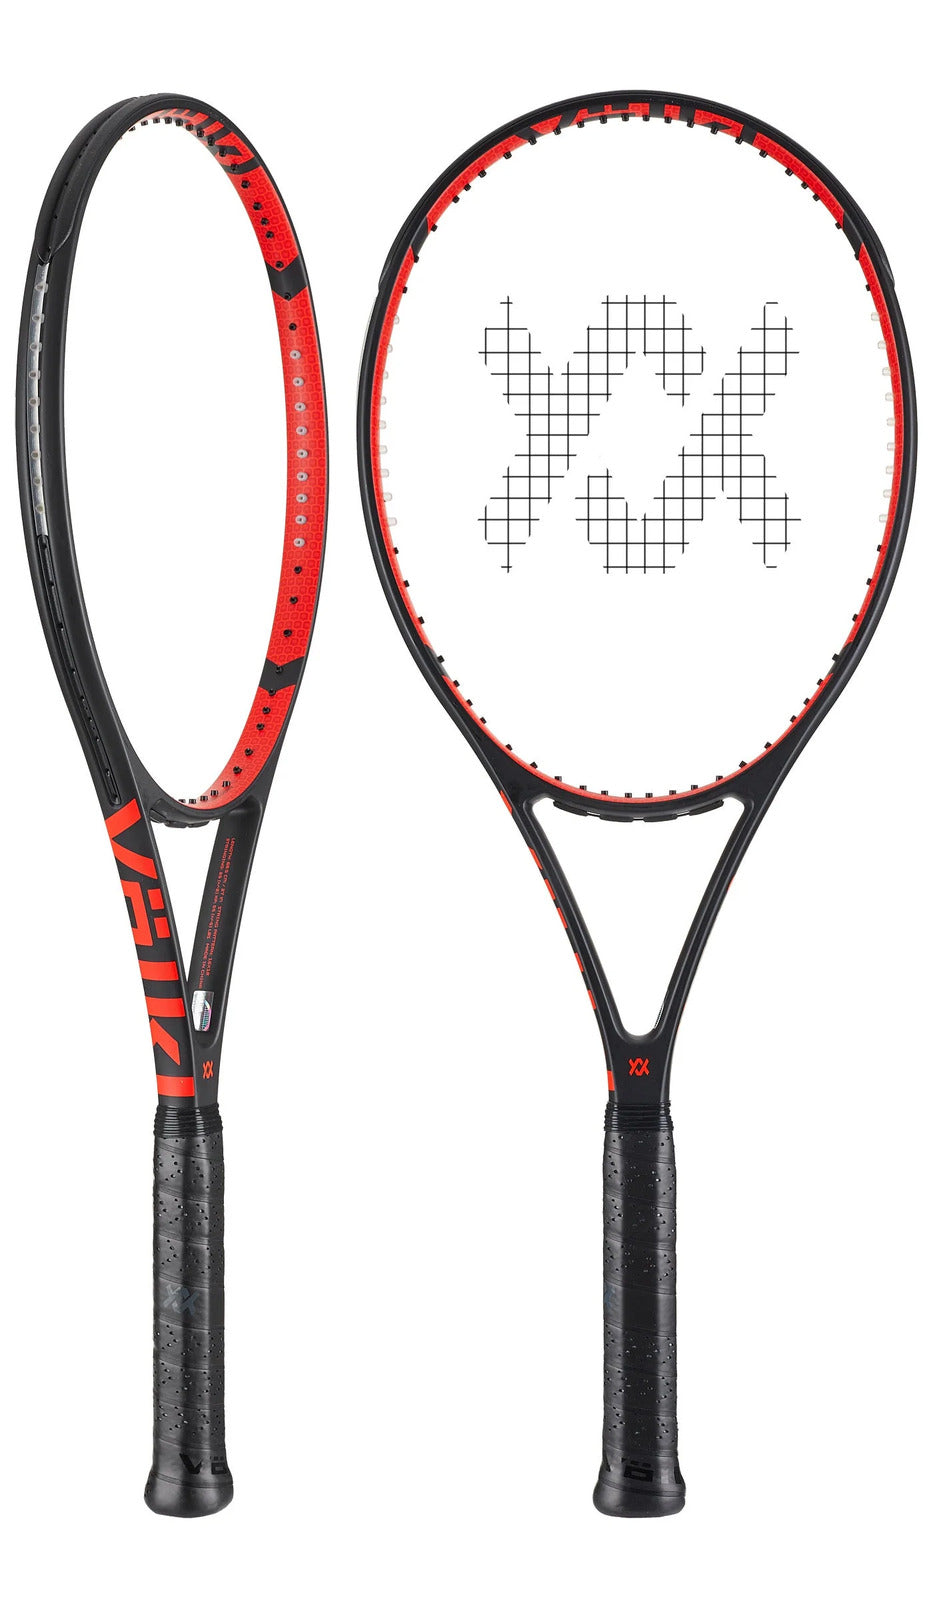 V-CELL 8 300g Tennis Racquet Racket - Unstrung - 4 3/8